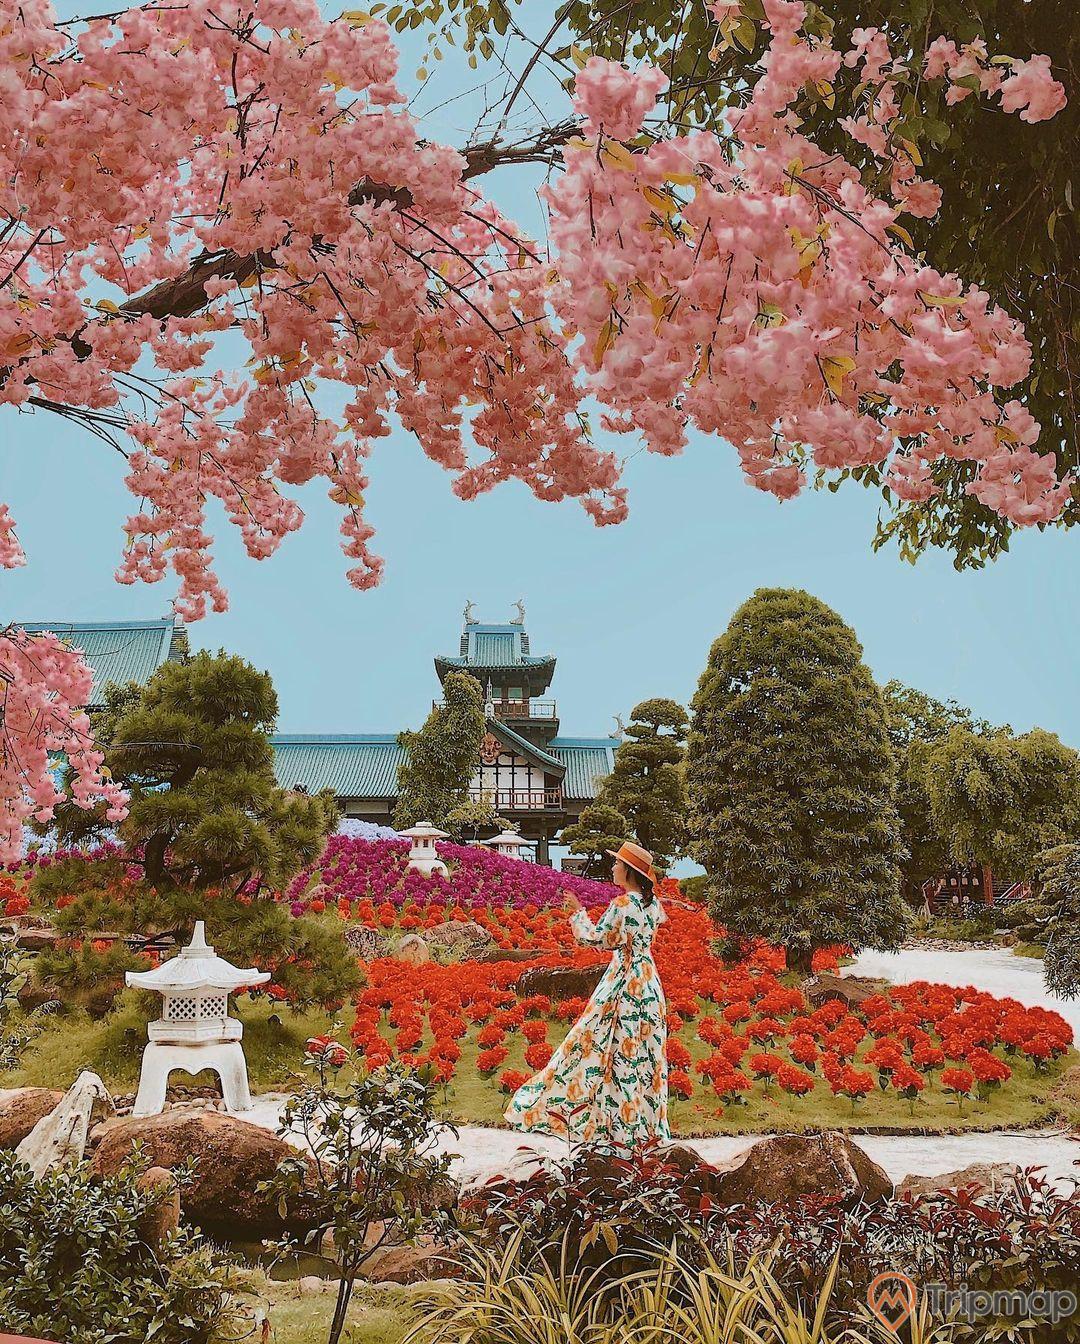 Vườn Nhật Bản Zen Garden